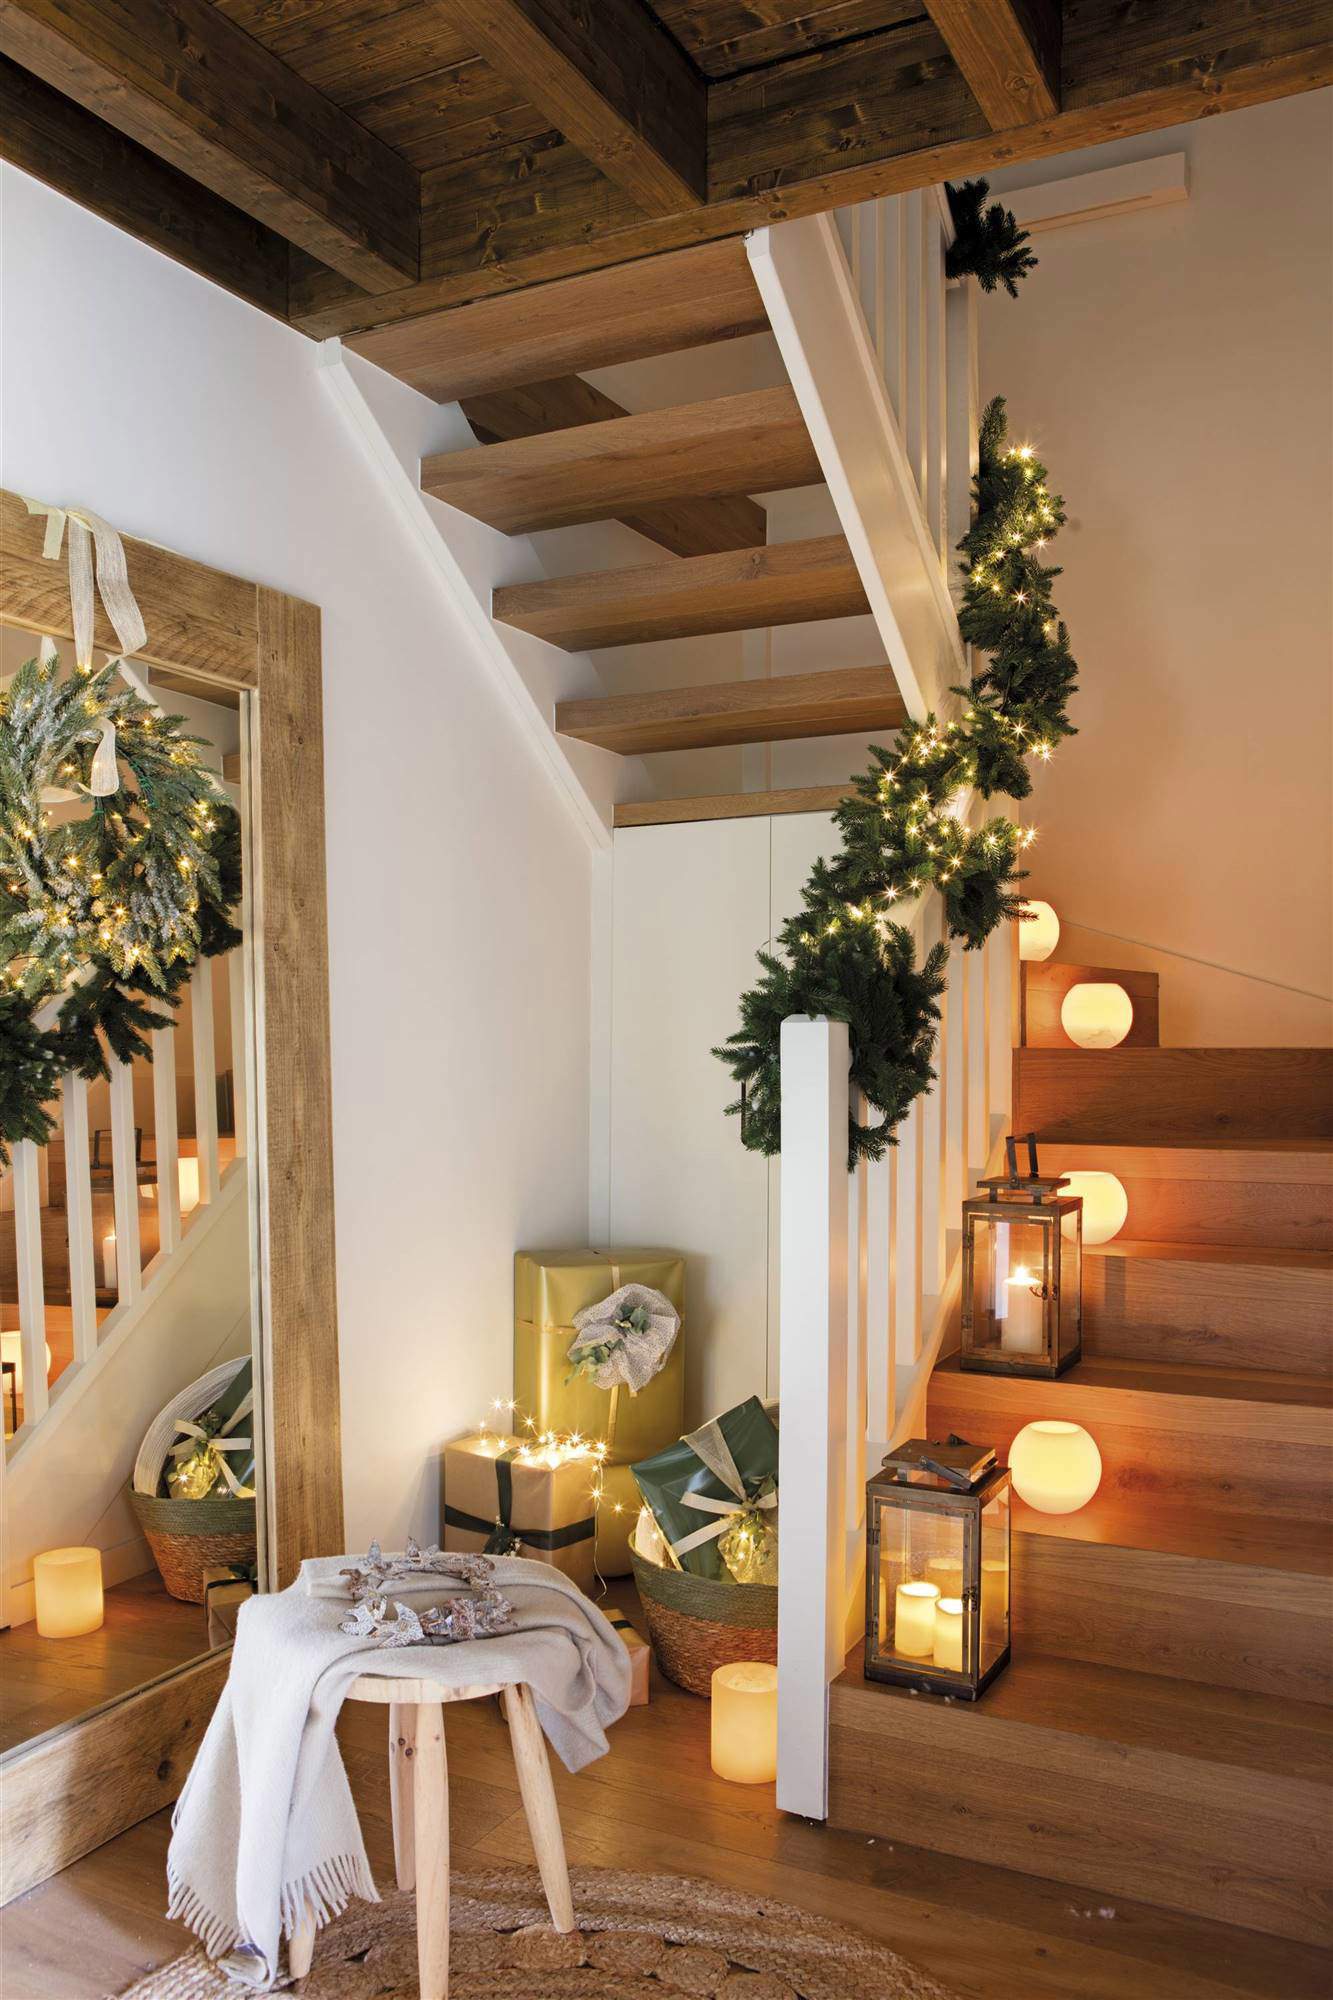 Escalera de recibidor decorada con velas y portavelas.